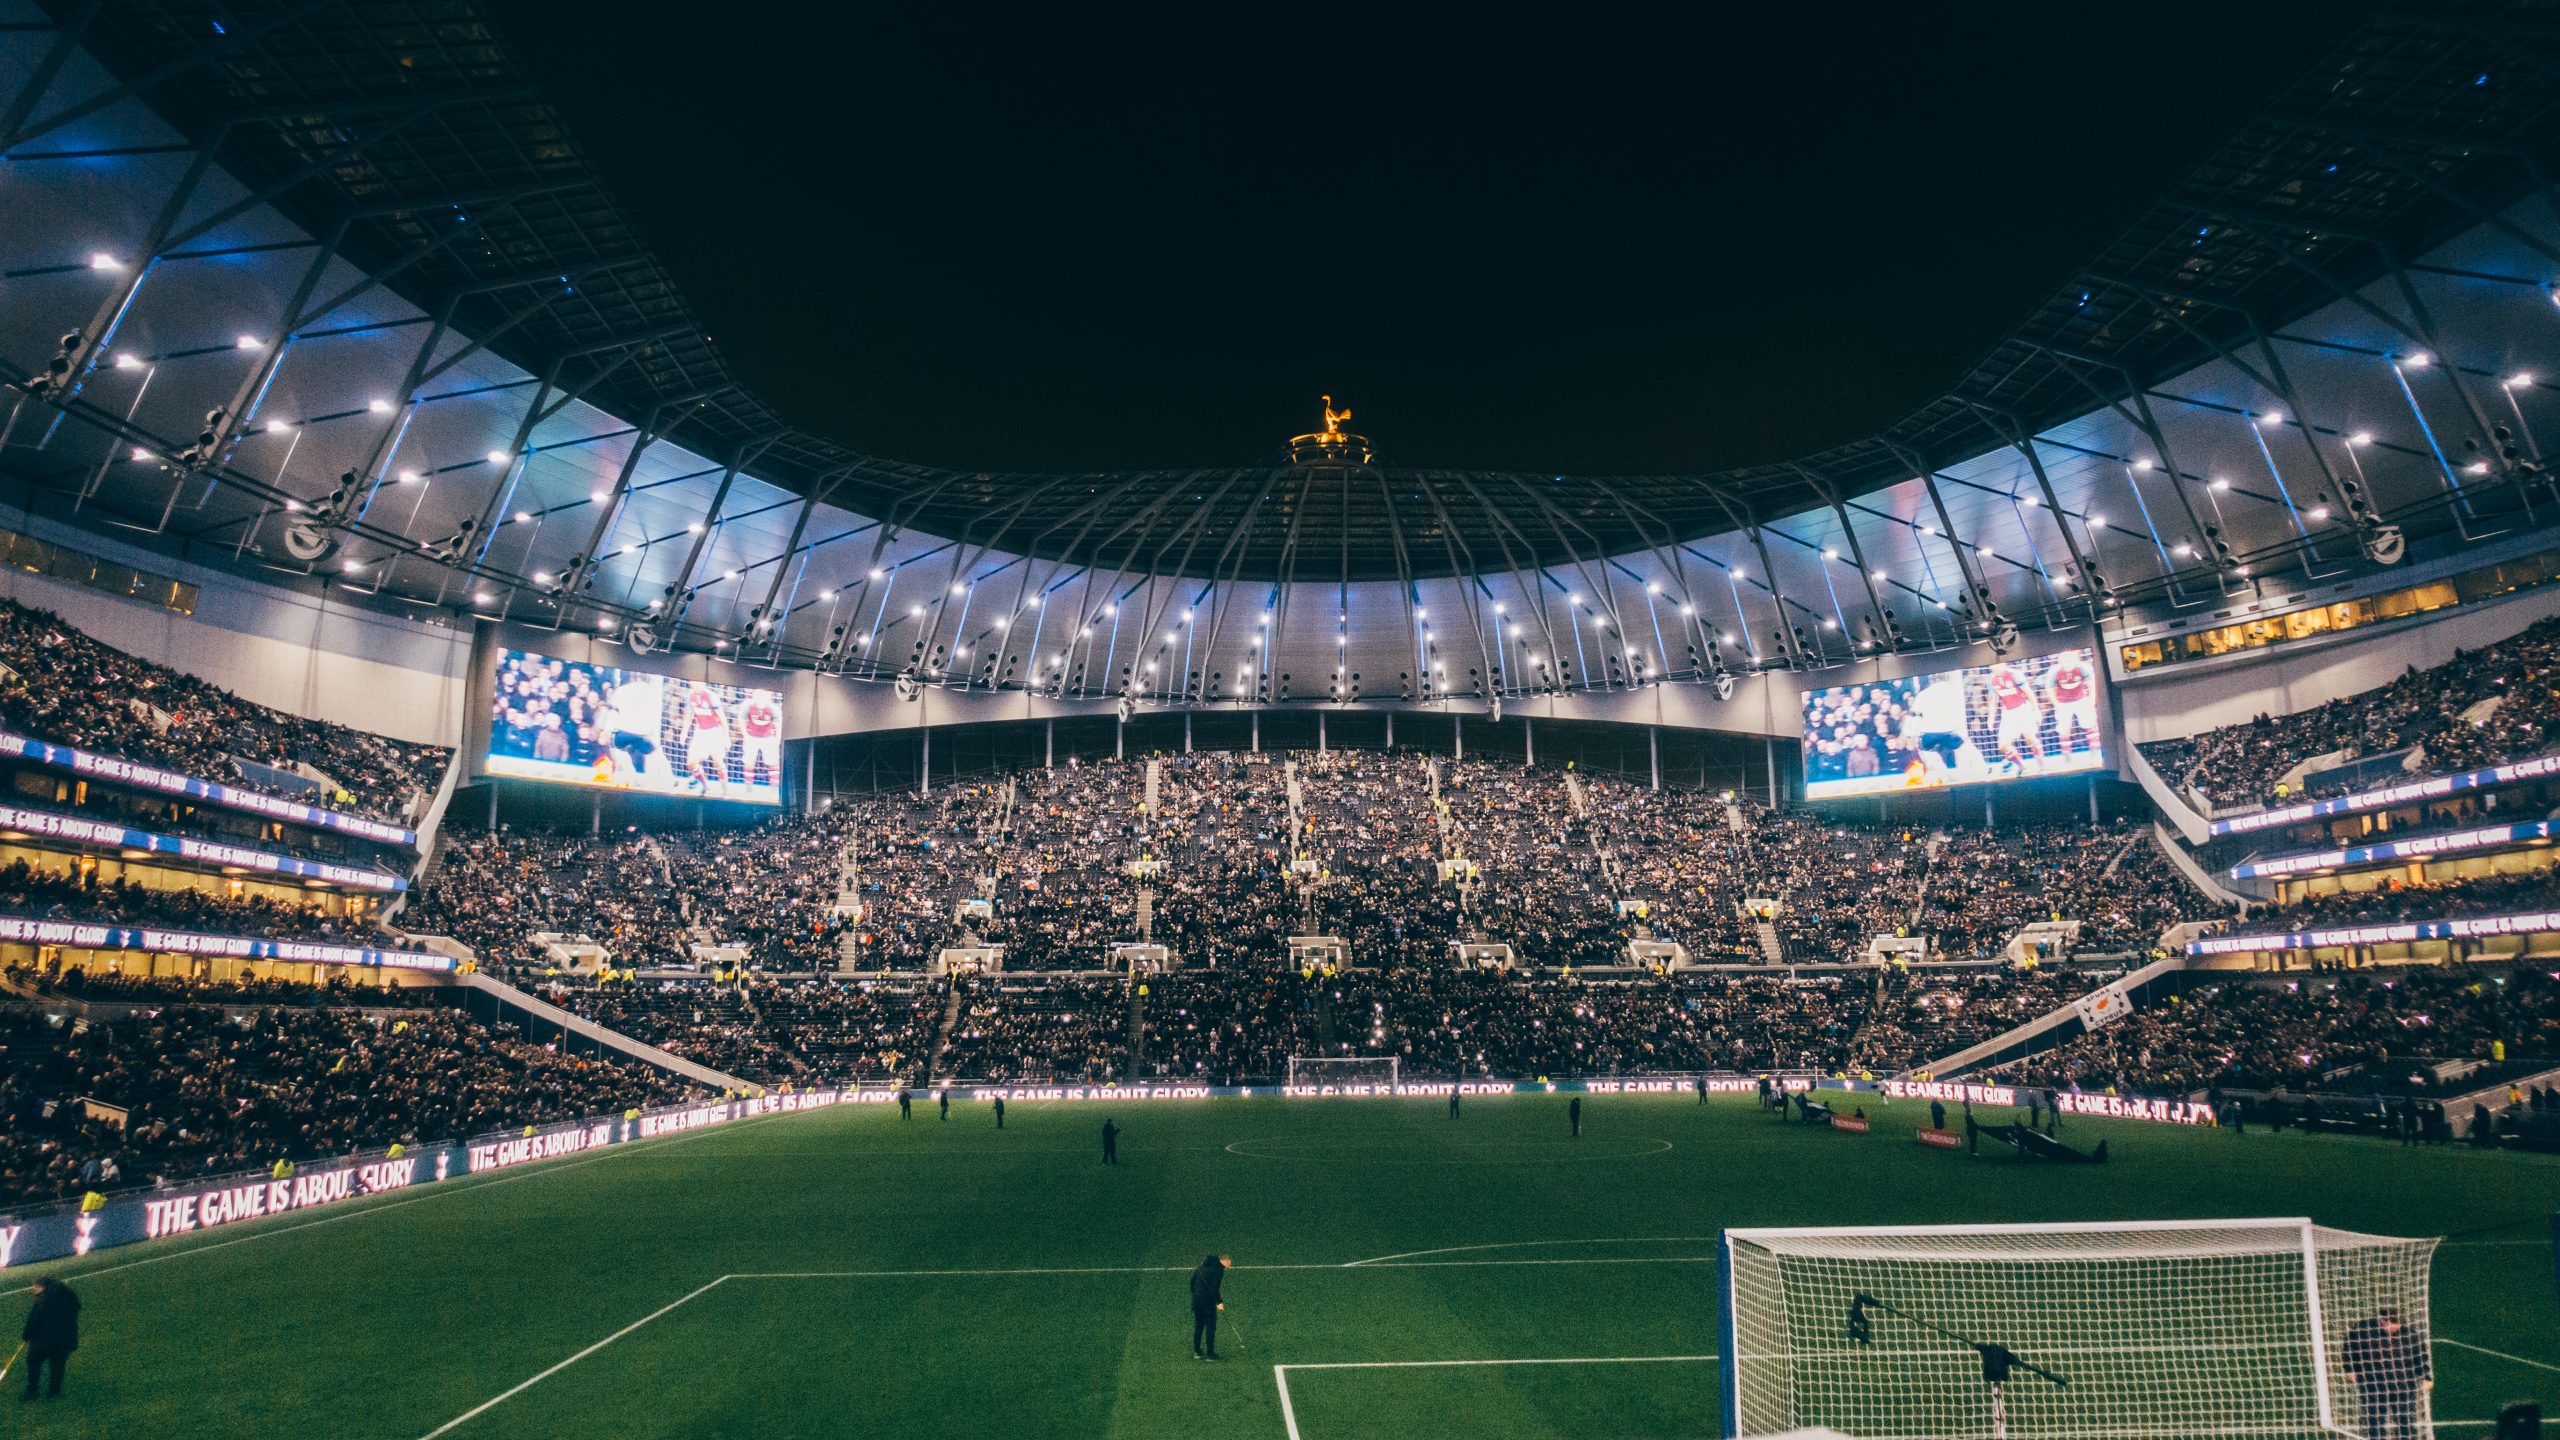 Tottenham Hotspur Stadium at night